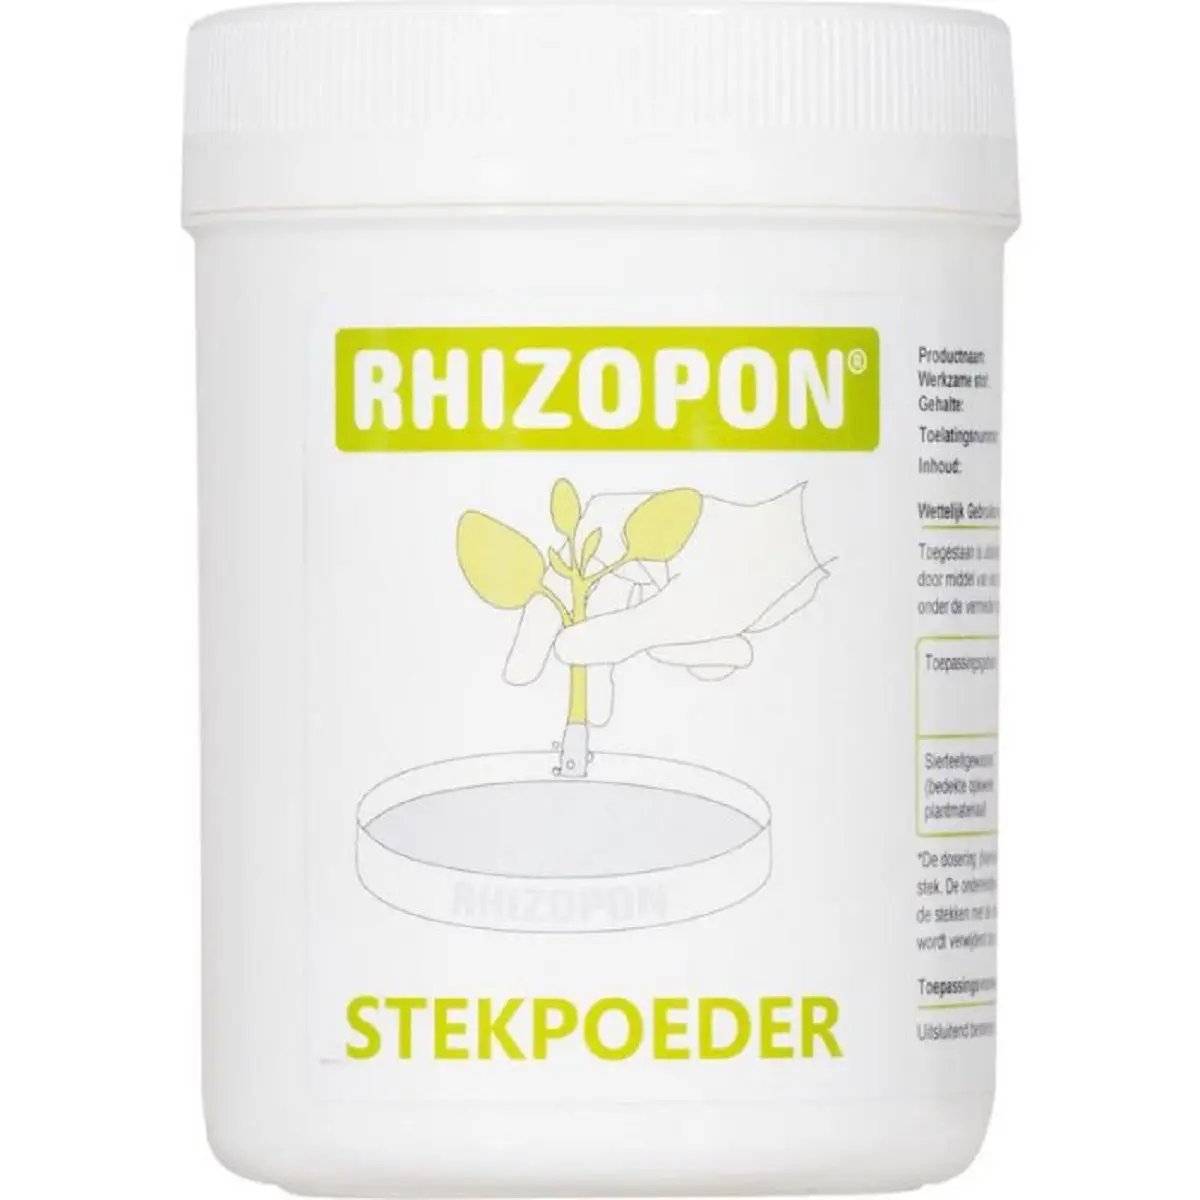 Rhizopon 25 grammes - Hormone de bouturage en poudre